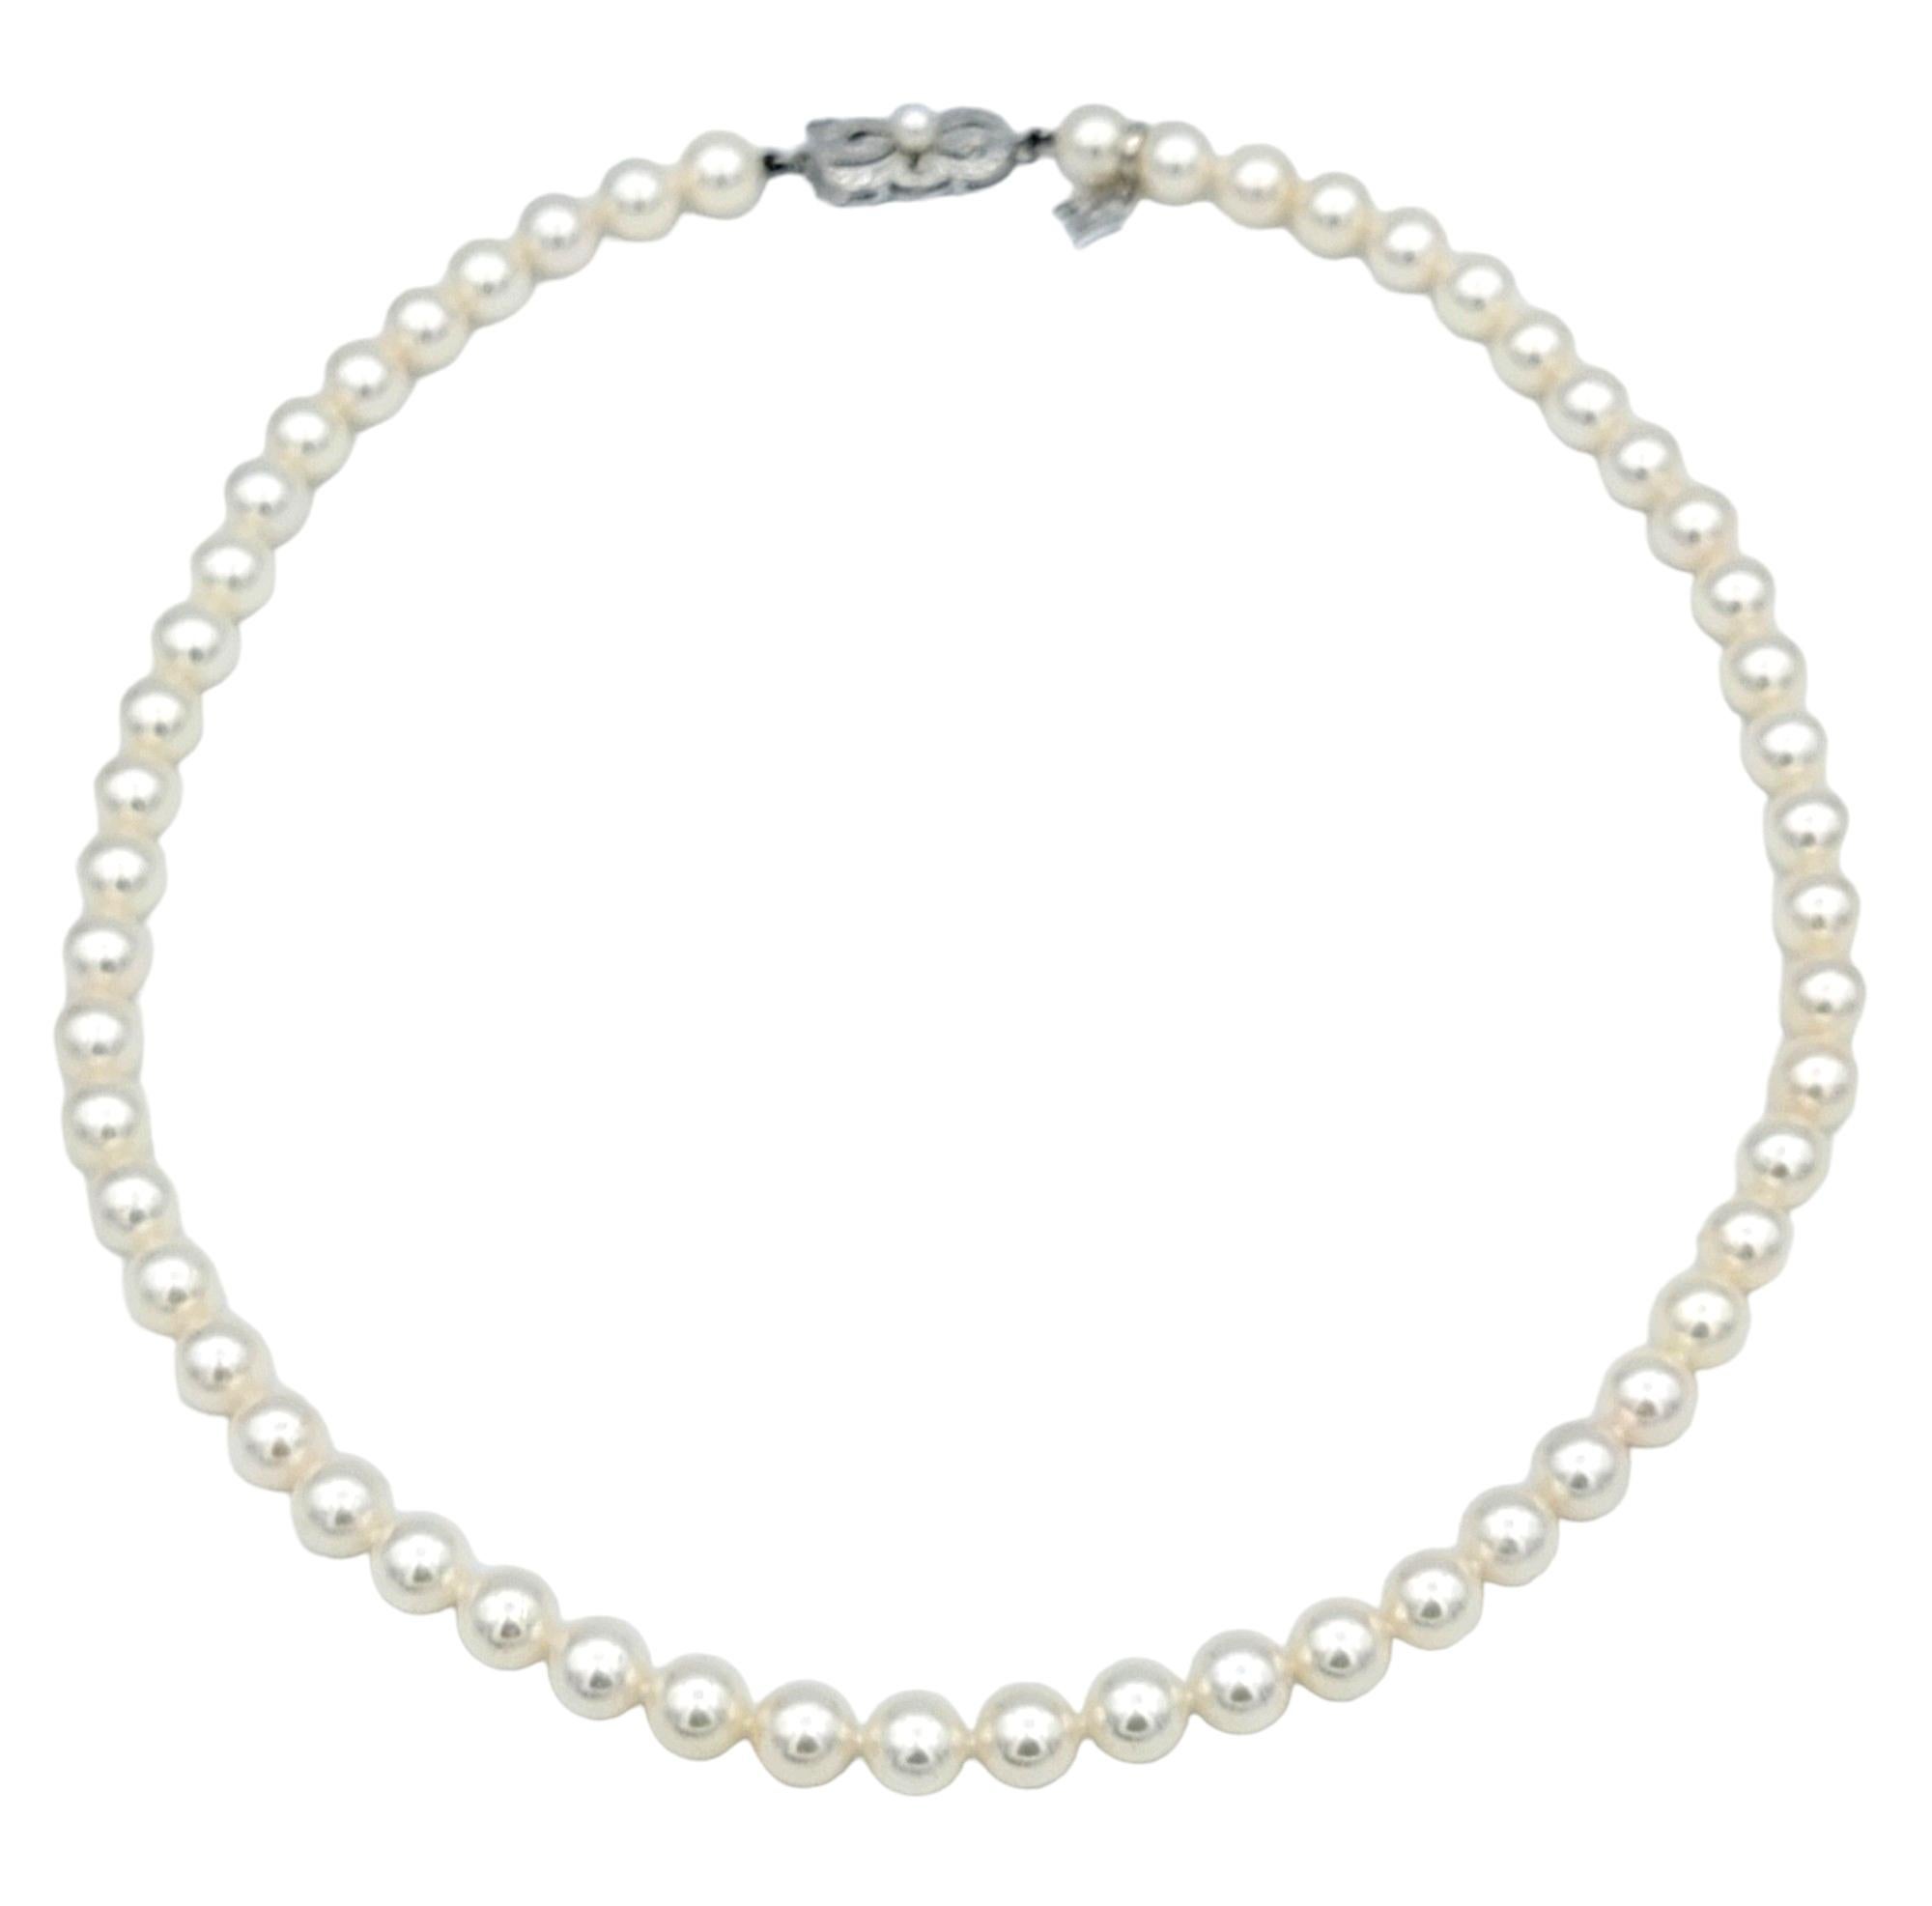 Ce magnifique collier de perles Akoya de Mikimoto incarne l'élégance et le raffinement, mettant en valeur le savoir-faire réputé de la marque et la beauté naturelle des perles. Chaque perle crème lustrée est méticuleusement sélectionnée et assortie